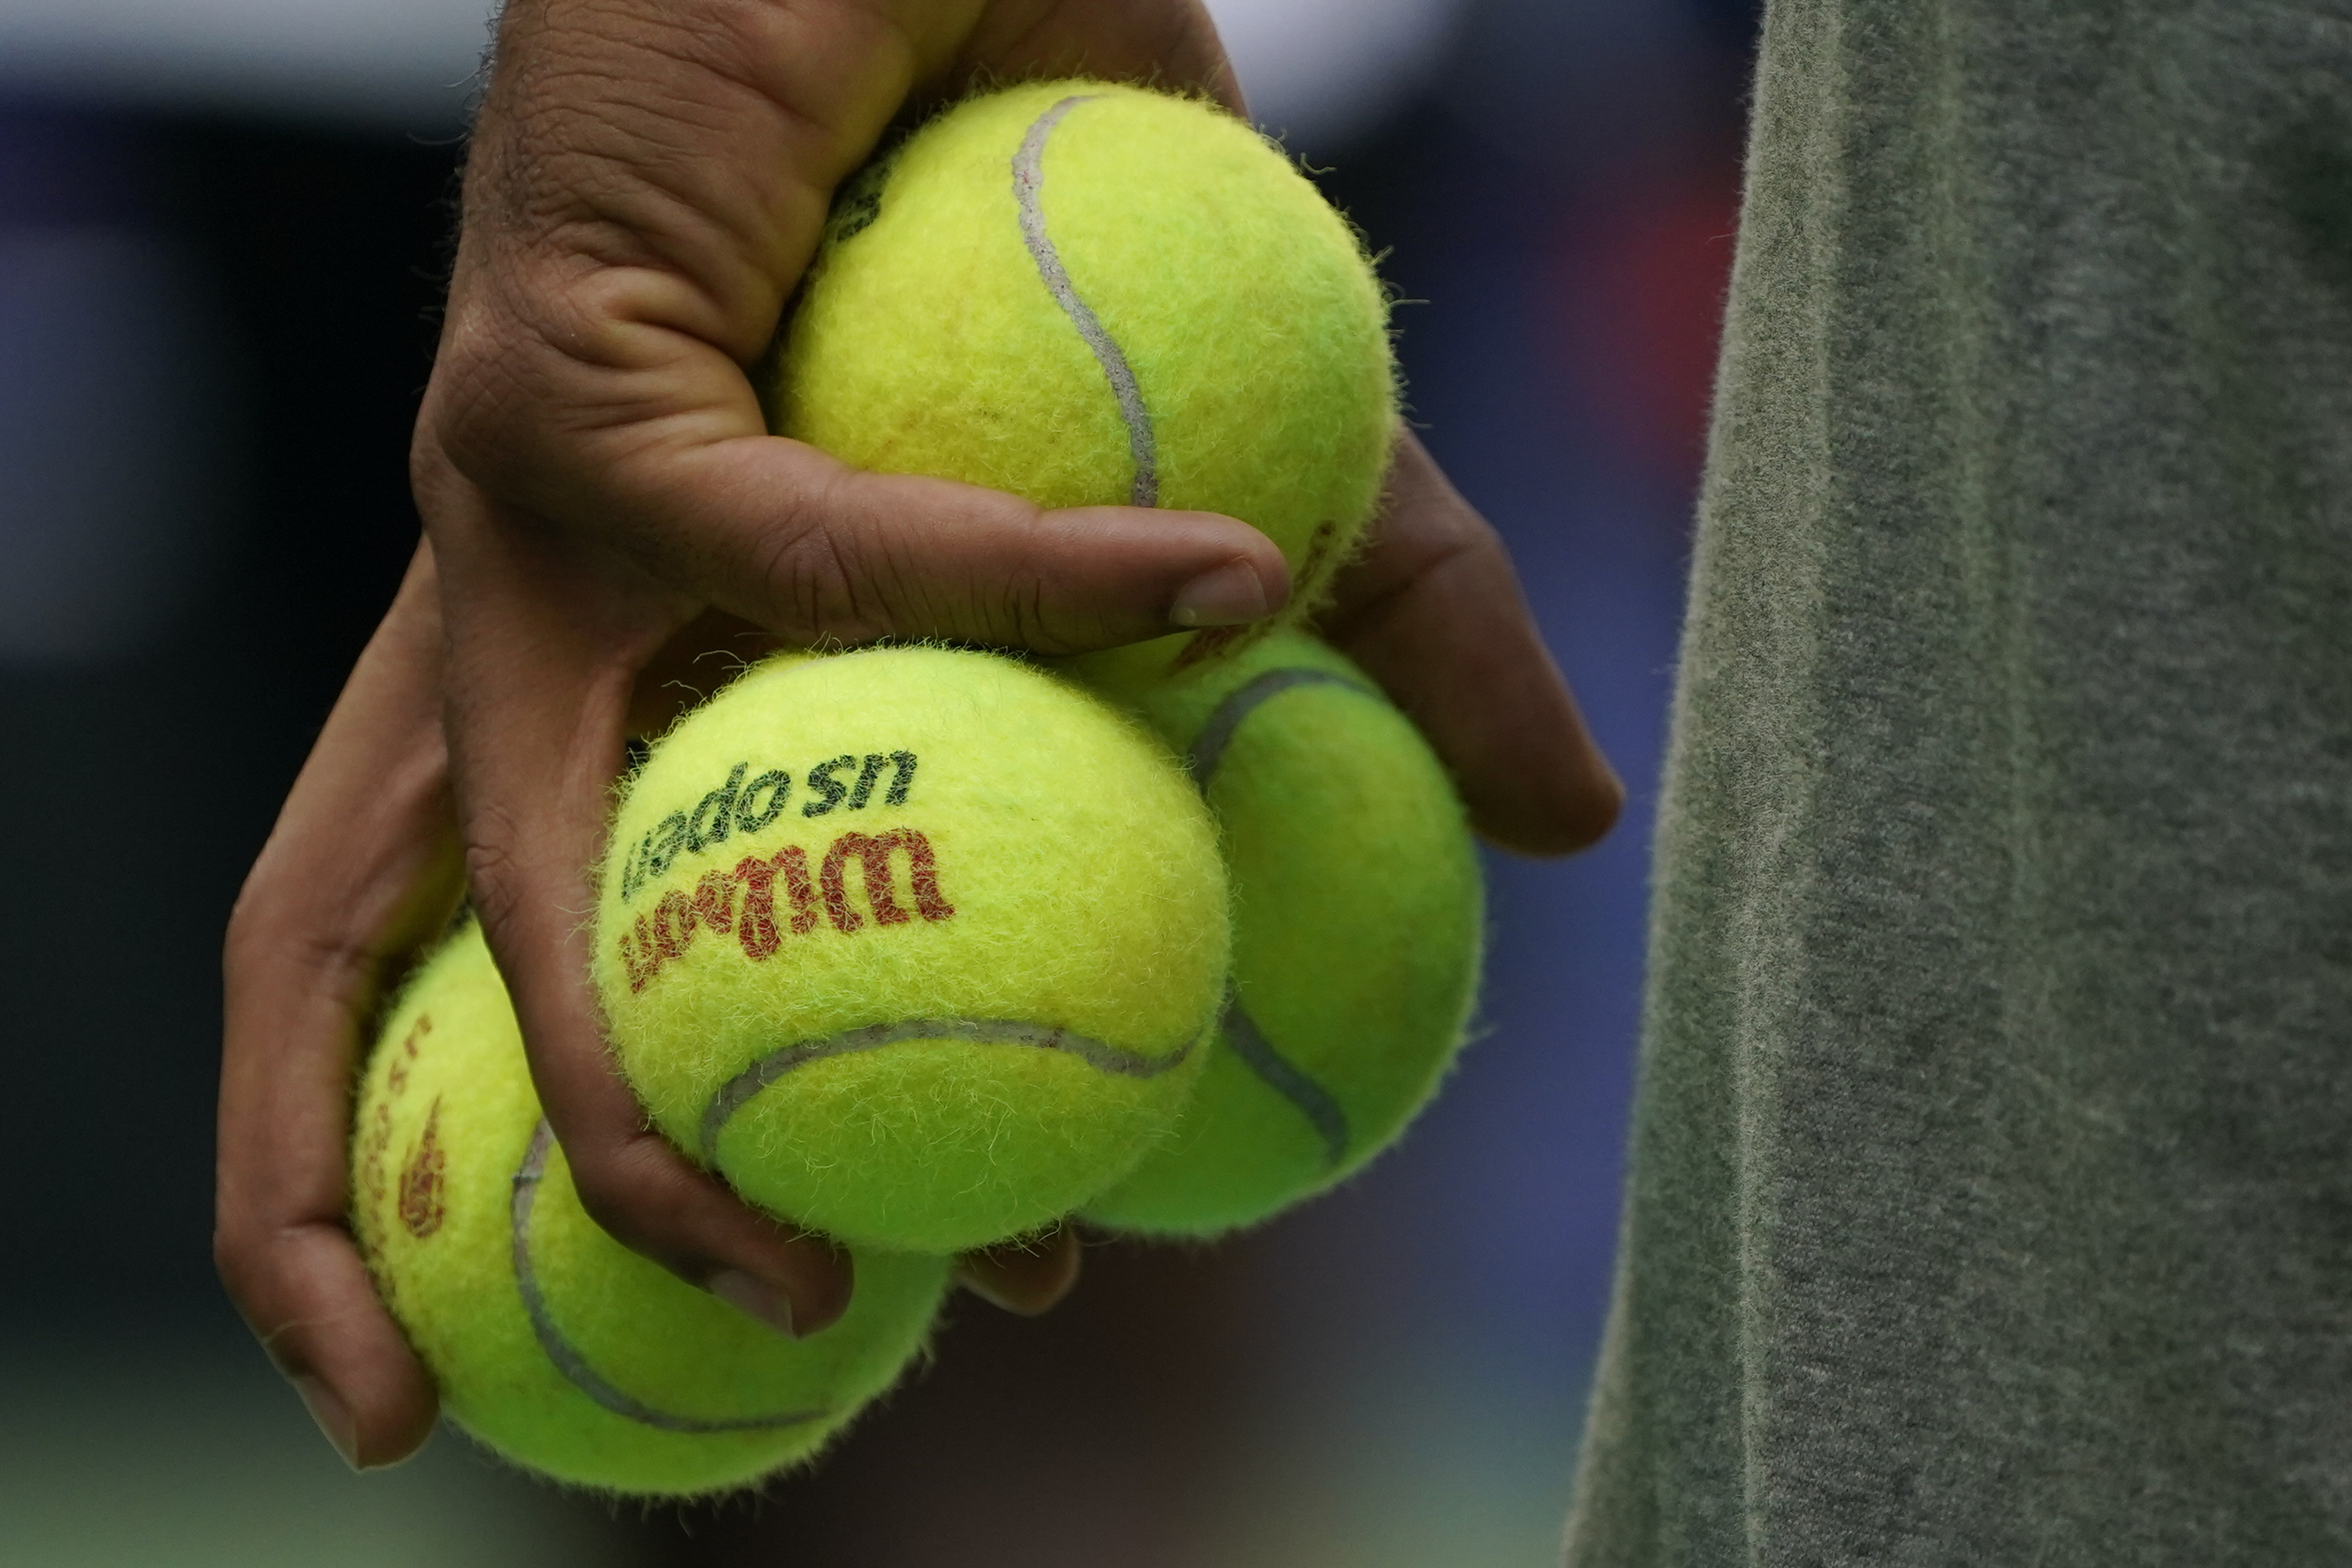 Cuidándote - Diferencias entre la pelota de tenis y la de pádel